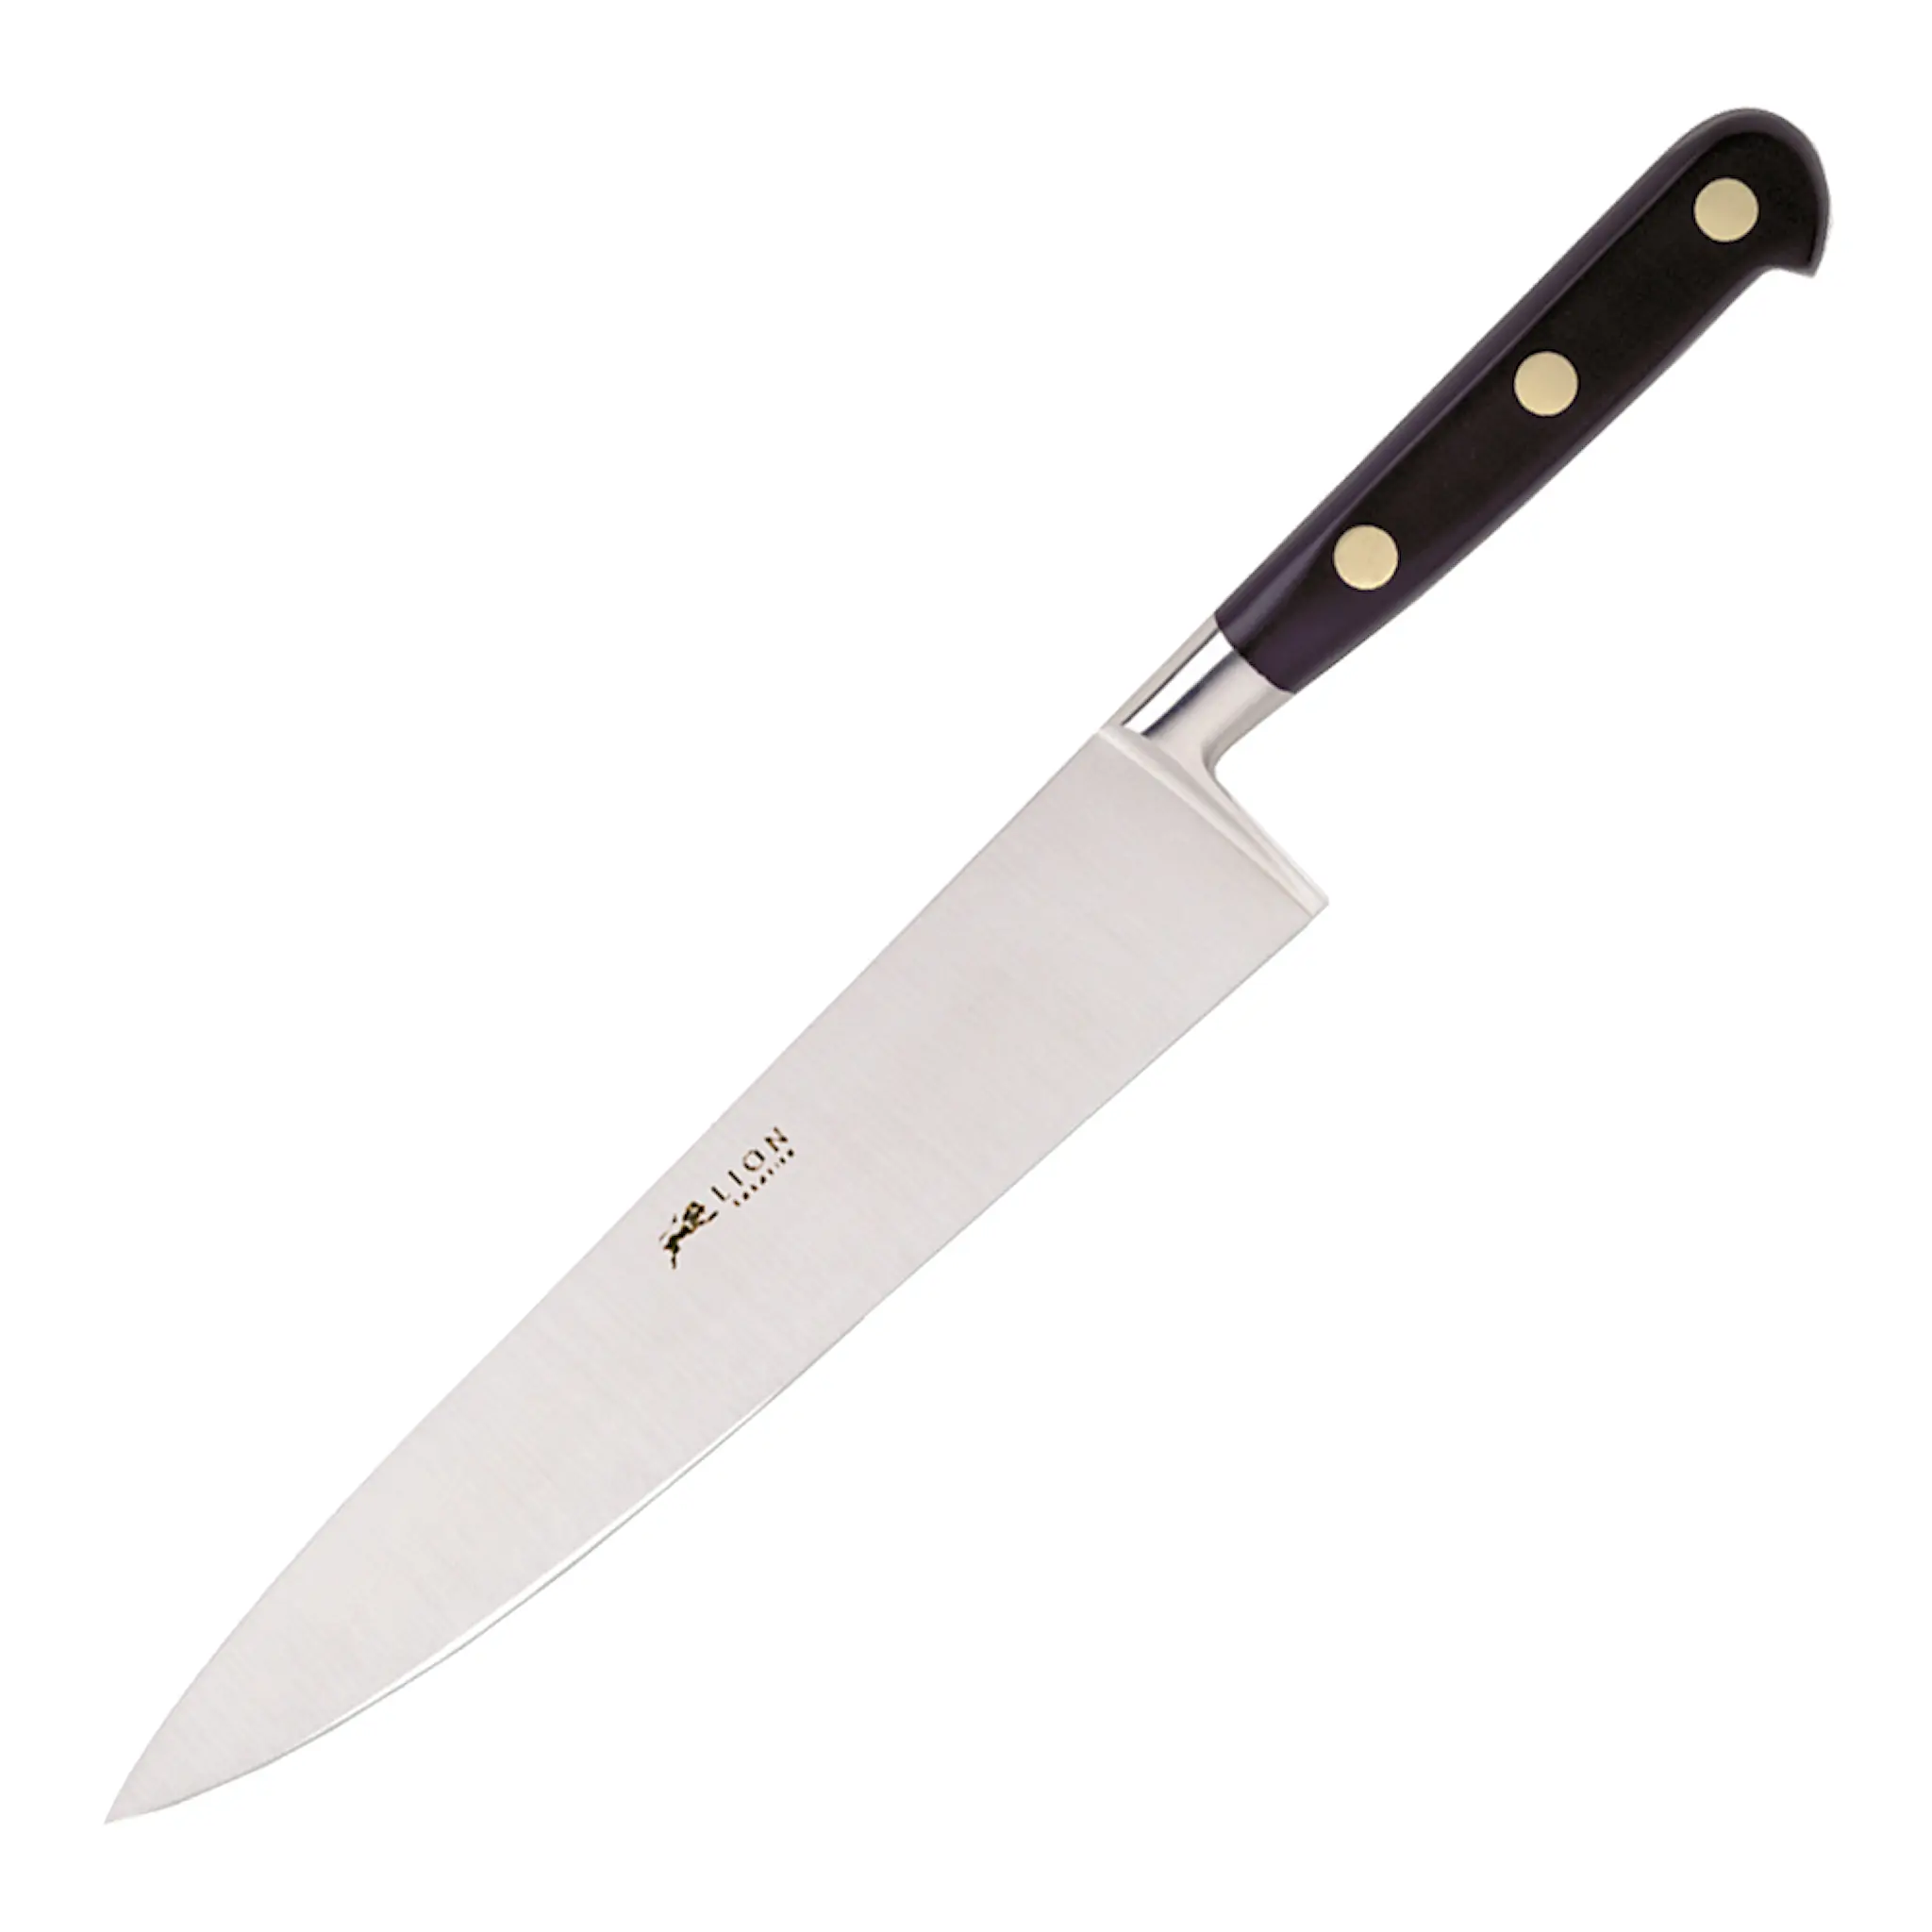 Sabatier Ideal Kockkniv 15 cm Stål/svart